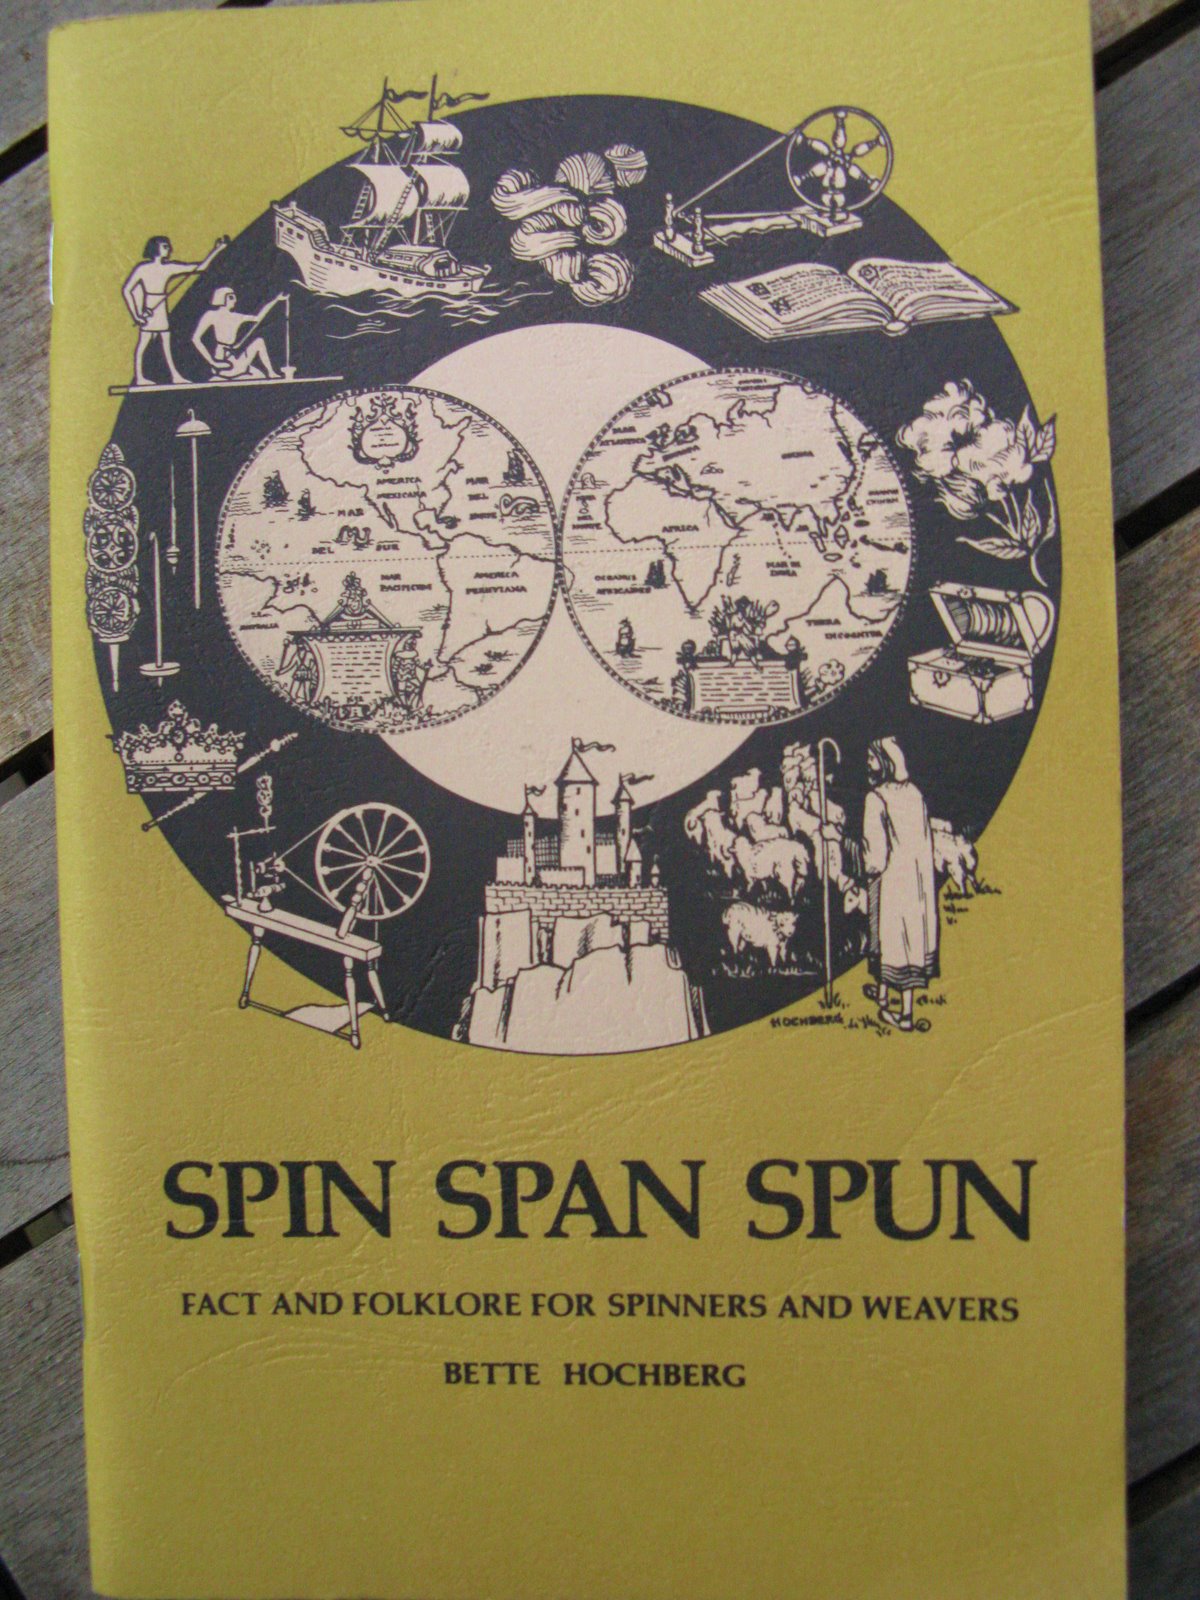 [spin+span+spun.JPG]